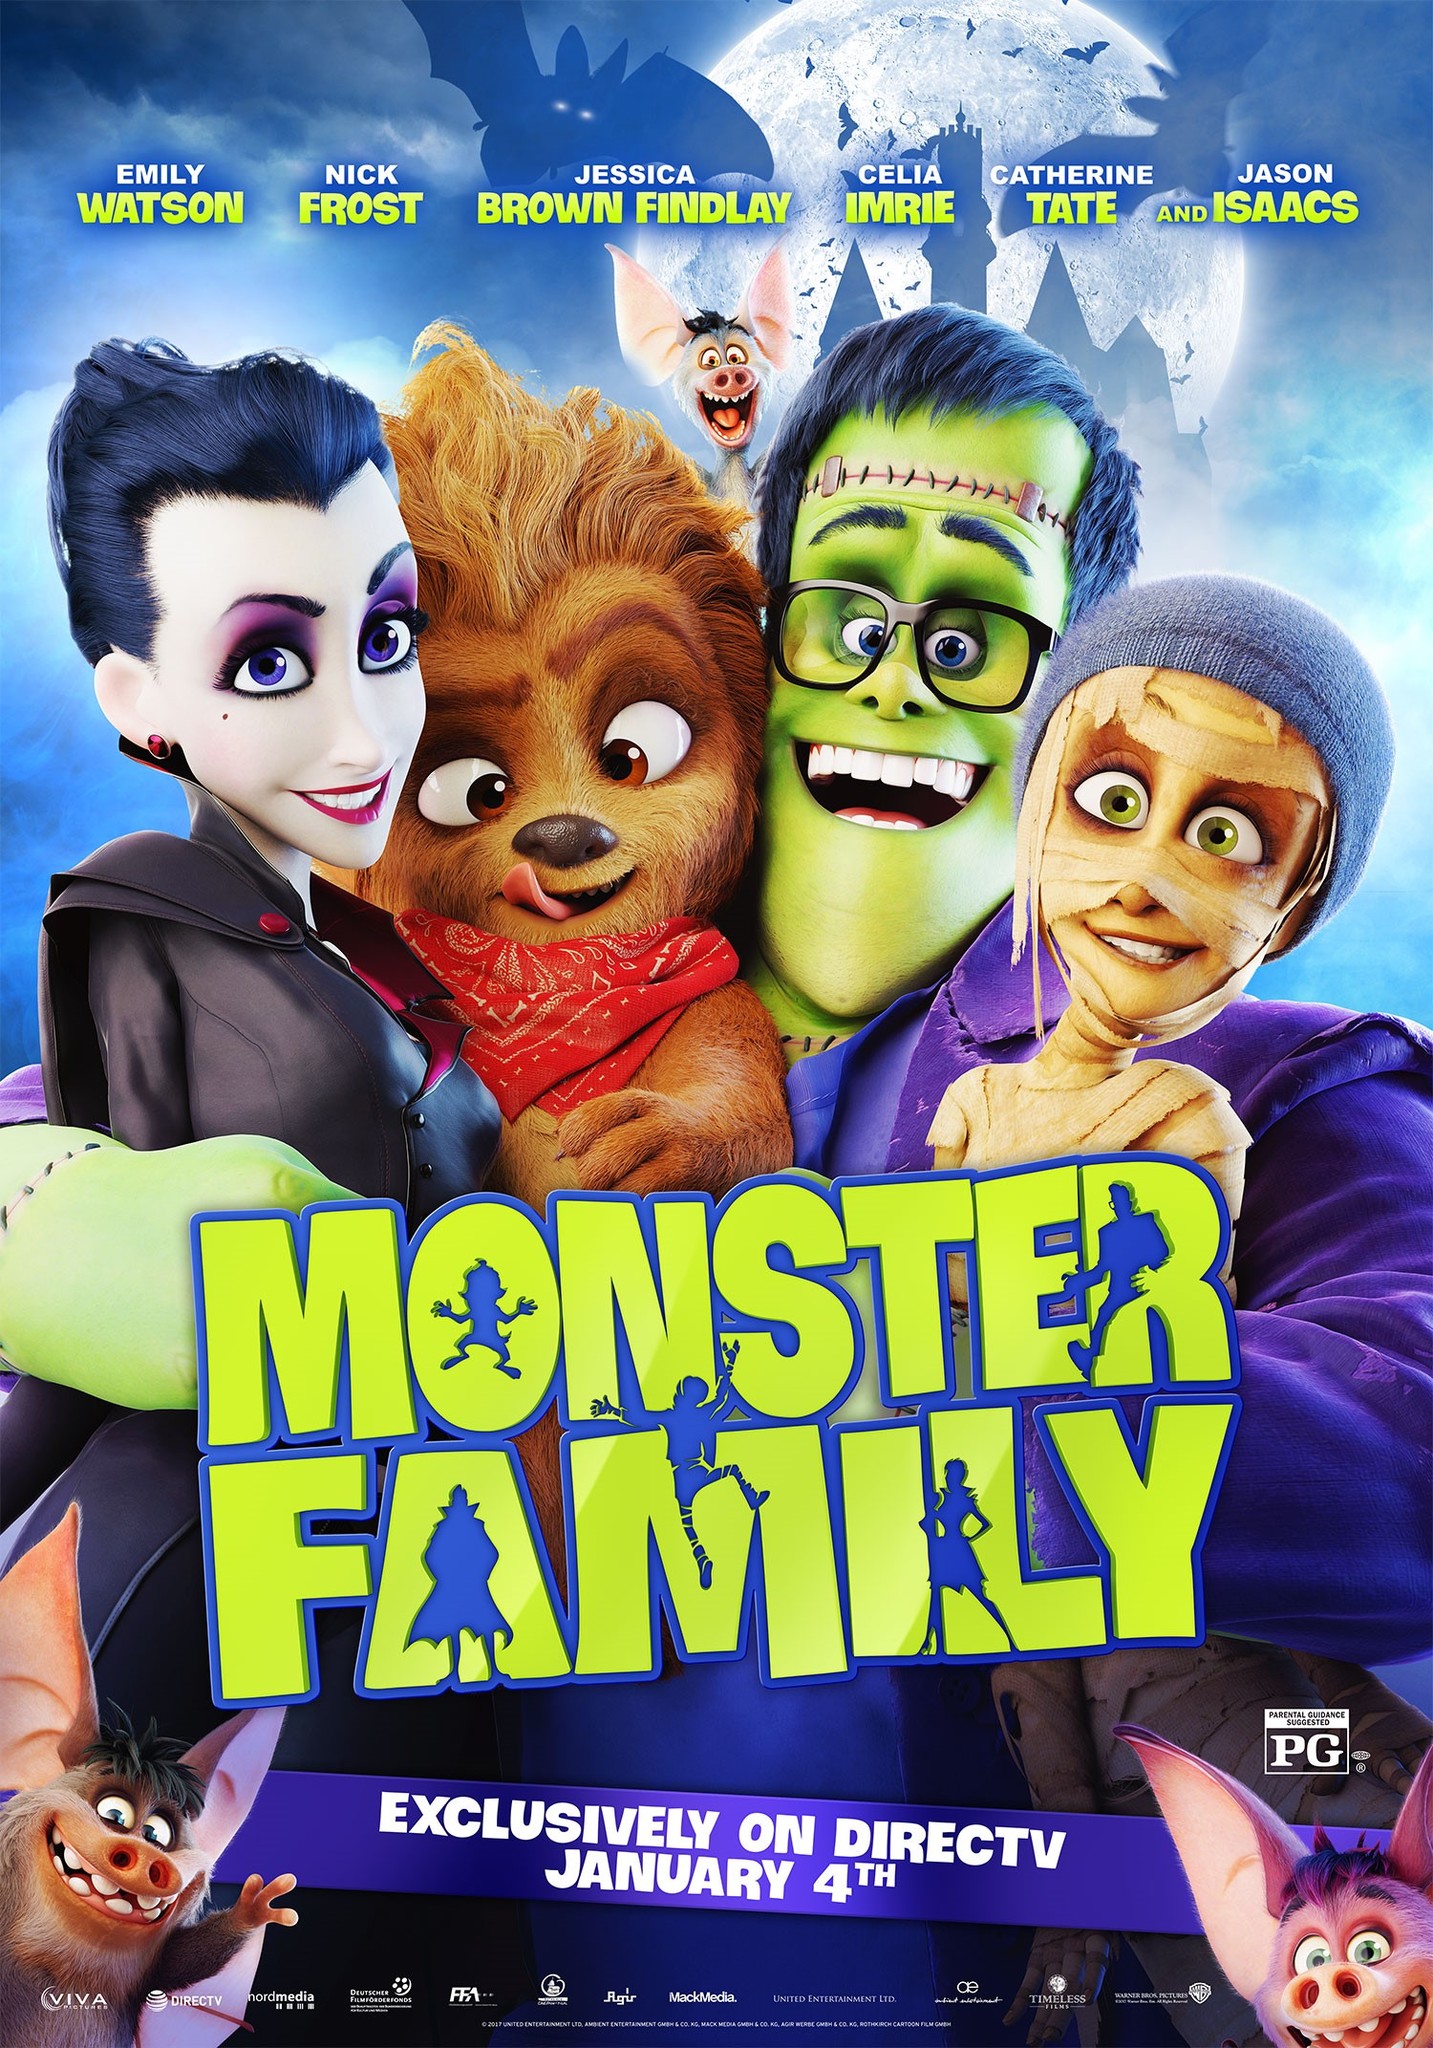 Nonton film Monster Family layarkaca21 indoxx1 ganool online streaming terbaru